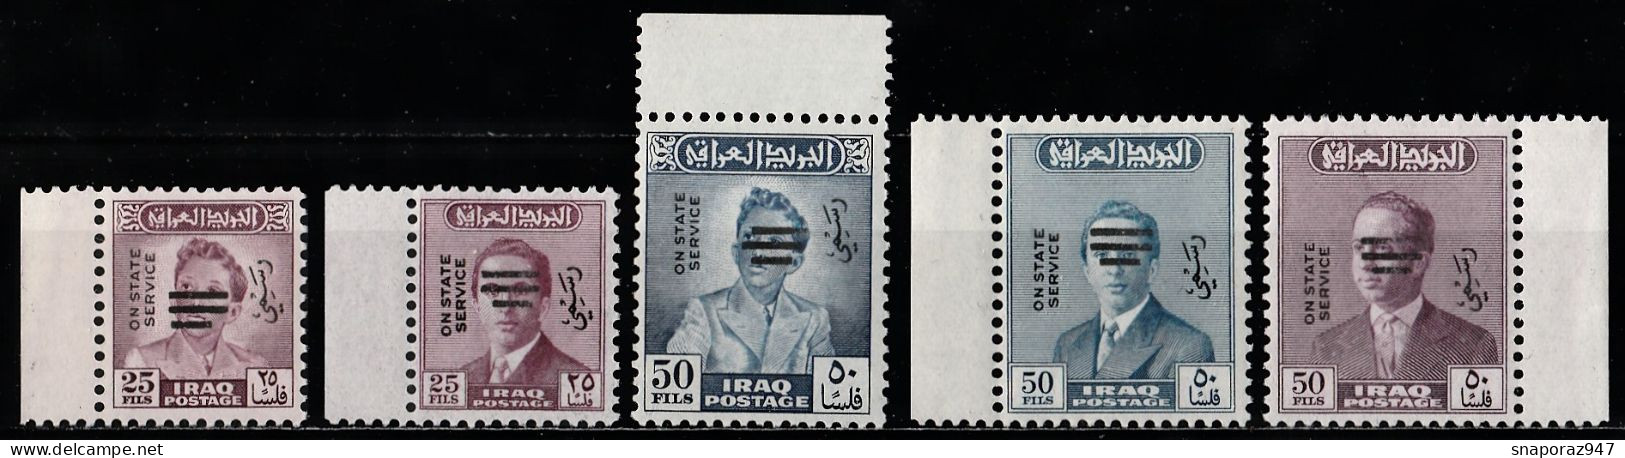 1973 Irak Service "King Faisal II Overprinted" Set MNH** Reg - Irak